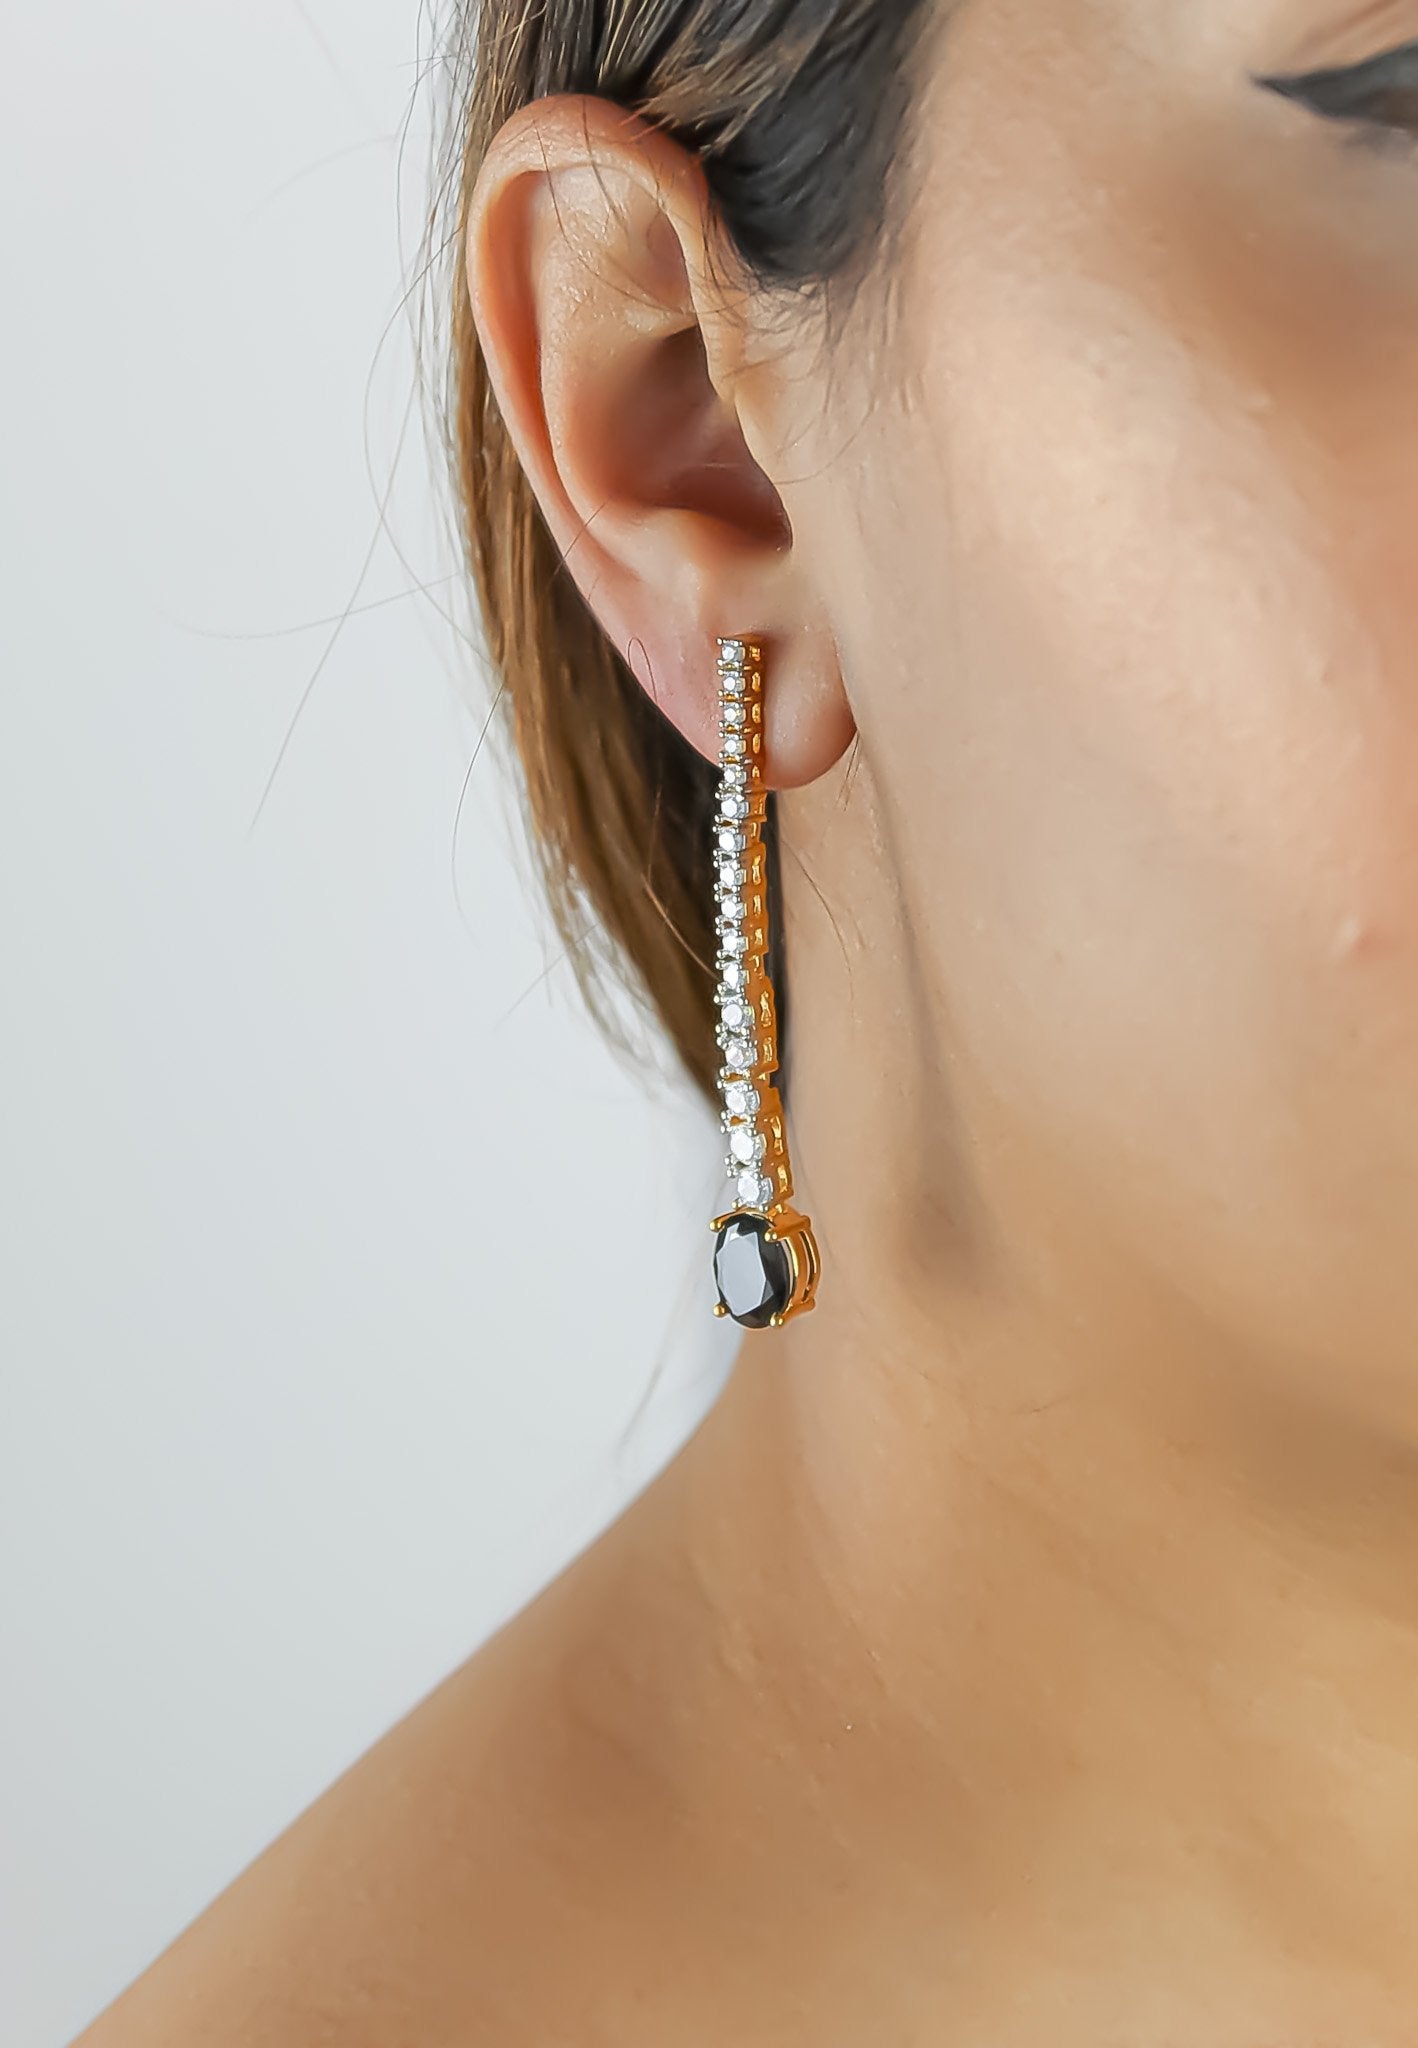 "Marbella Zircon Earrings: Lightweight, 18K Gold or Silver Plated"
Keywords: Marbella, Zircon, Earrings, Lightweight, Gold-plated, Silver-plated. Bijou Her